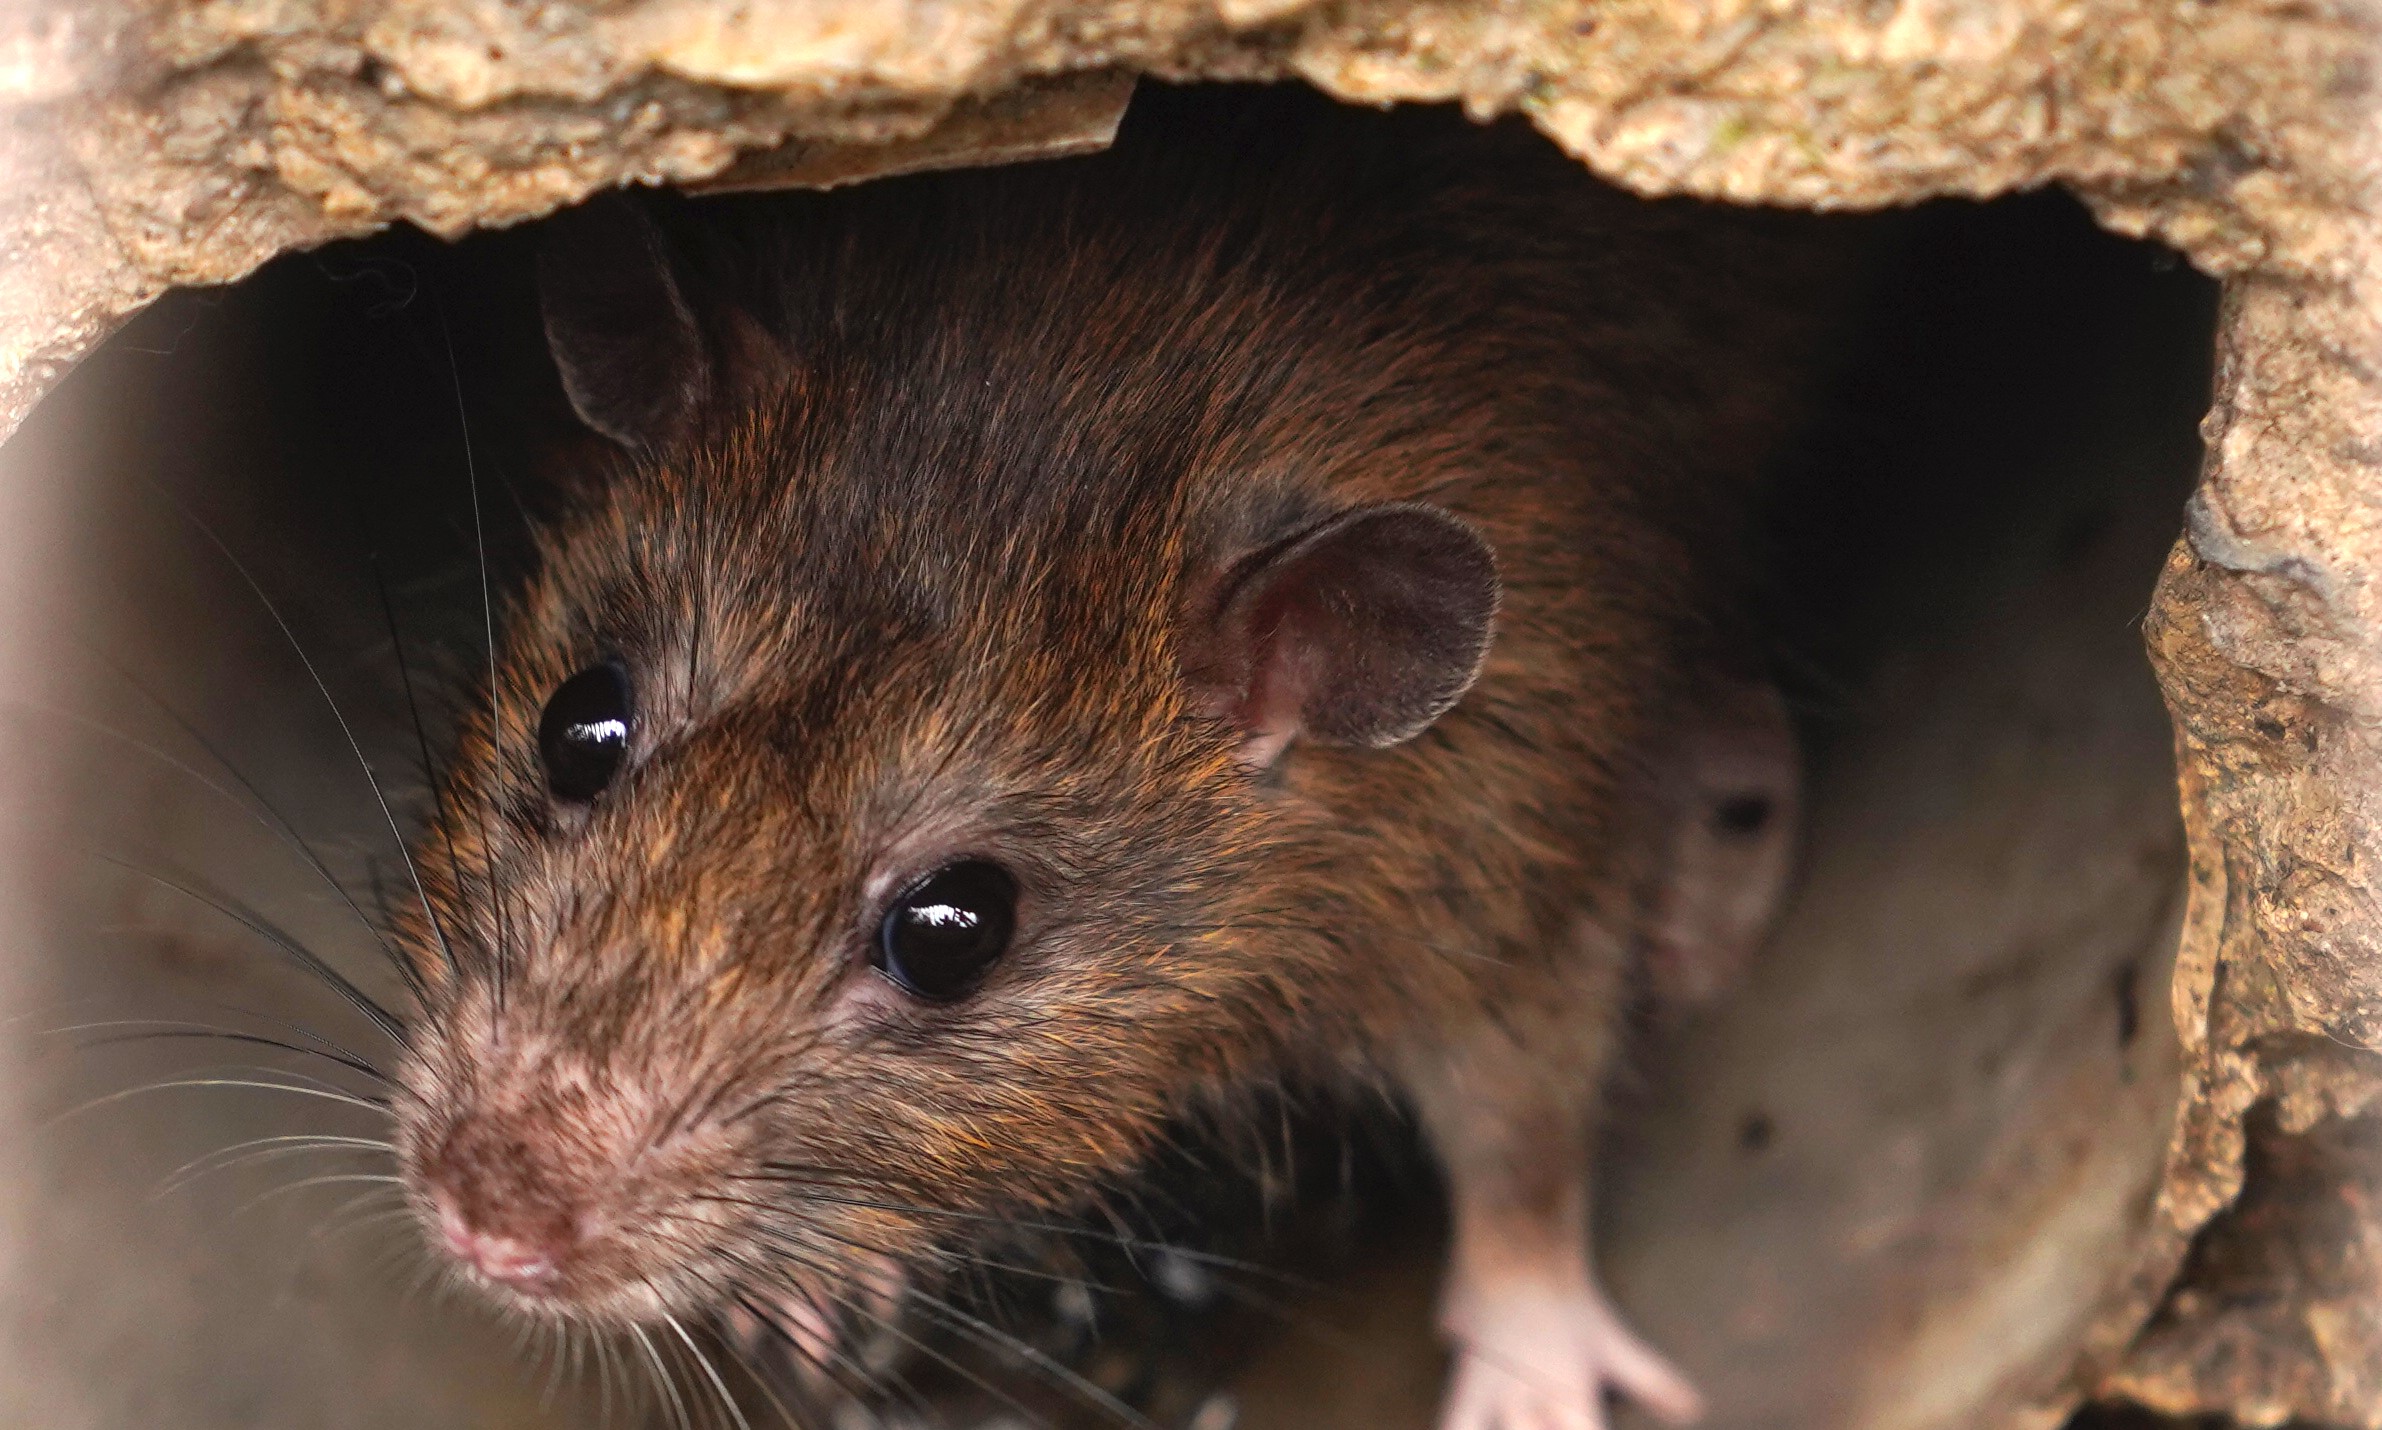 Close-up of a rat.